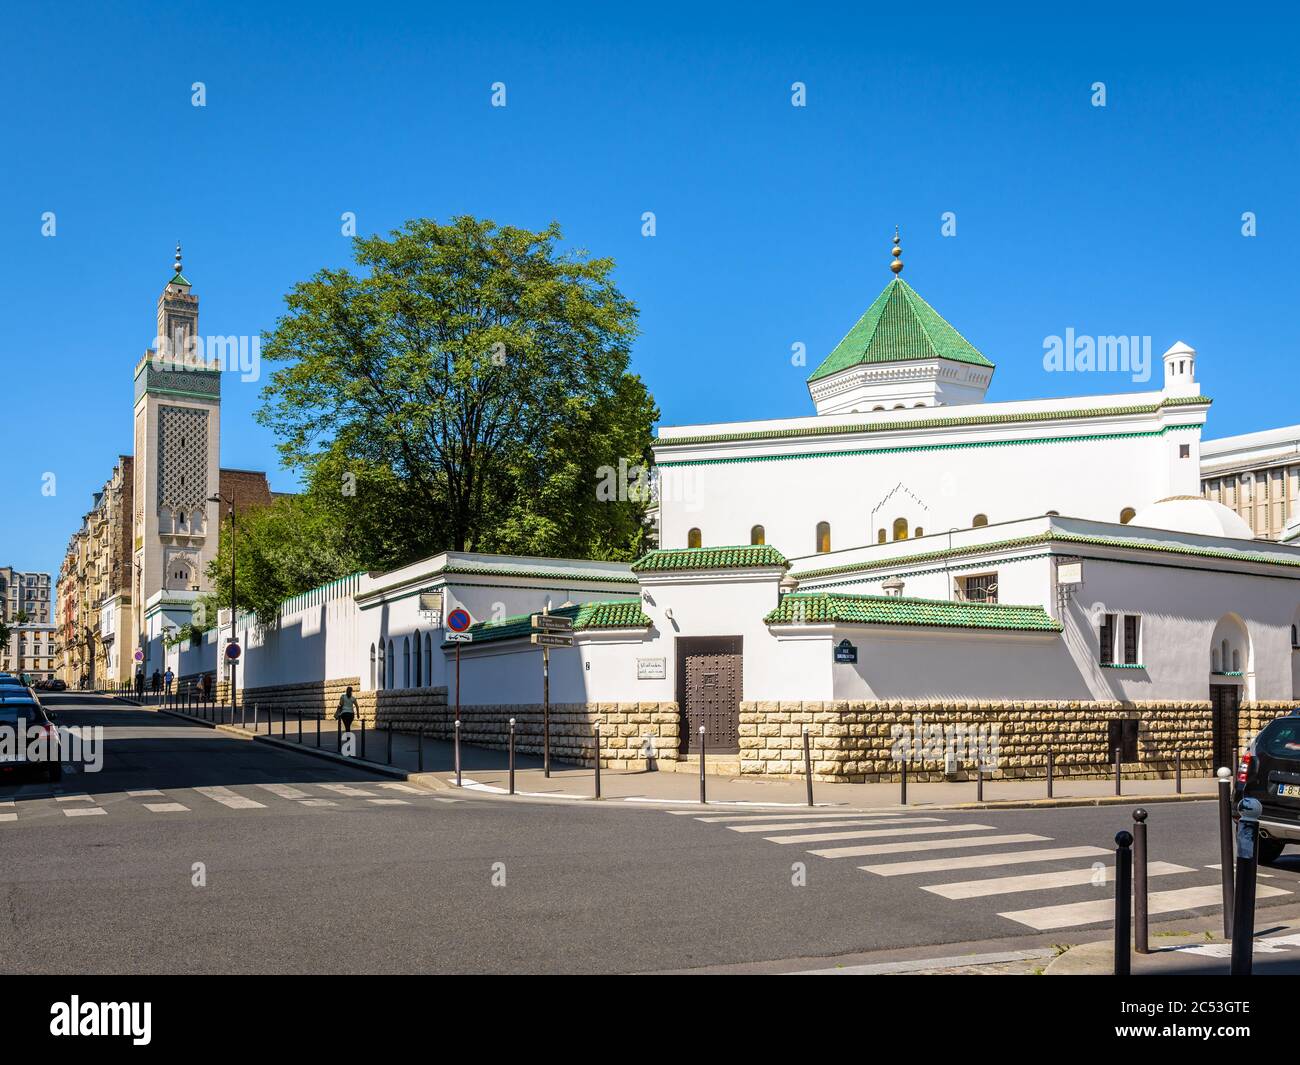 Gesamtansicht der Großen Moschee von Paris mit dem 33 Meter hohen Minarett auf der linken Seite und dem Gebetsraum mit einer Kuppel mit grünen Fliesen auf der rechten Seite Stockfoto